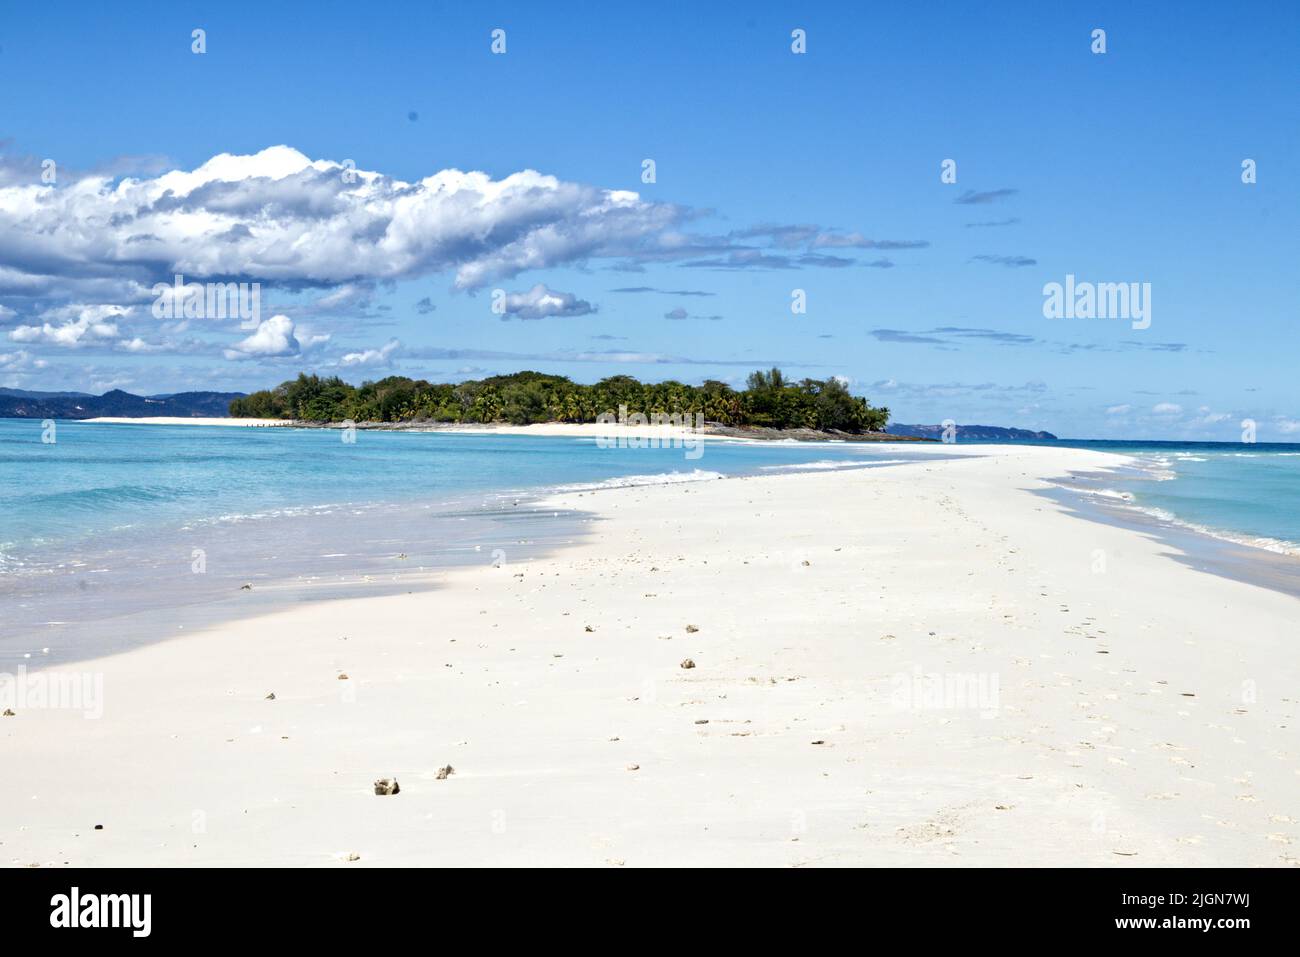 Sesión de fotos de la playa de Madagascar Foto de stock